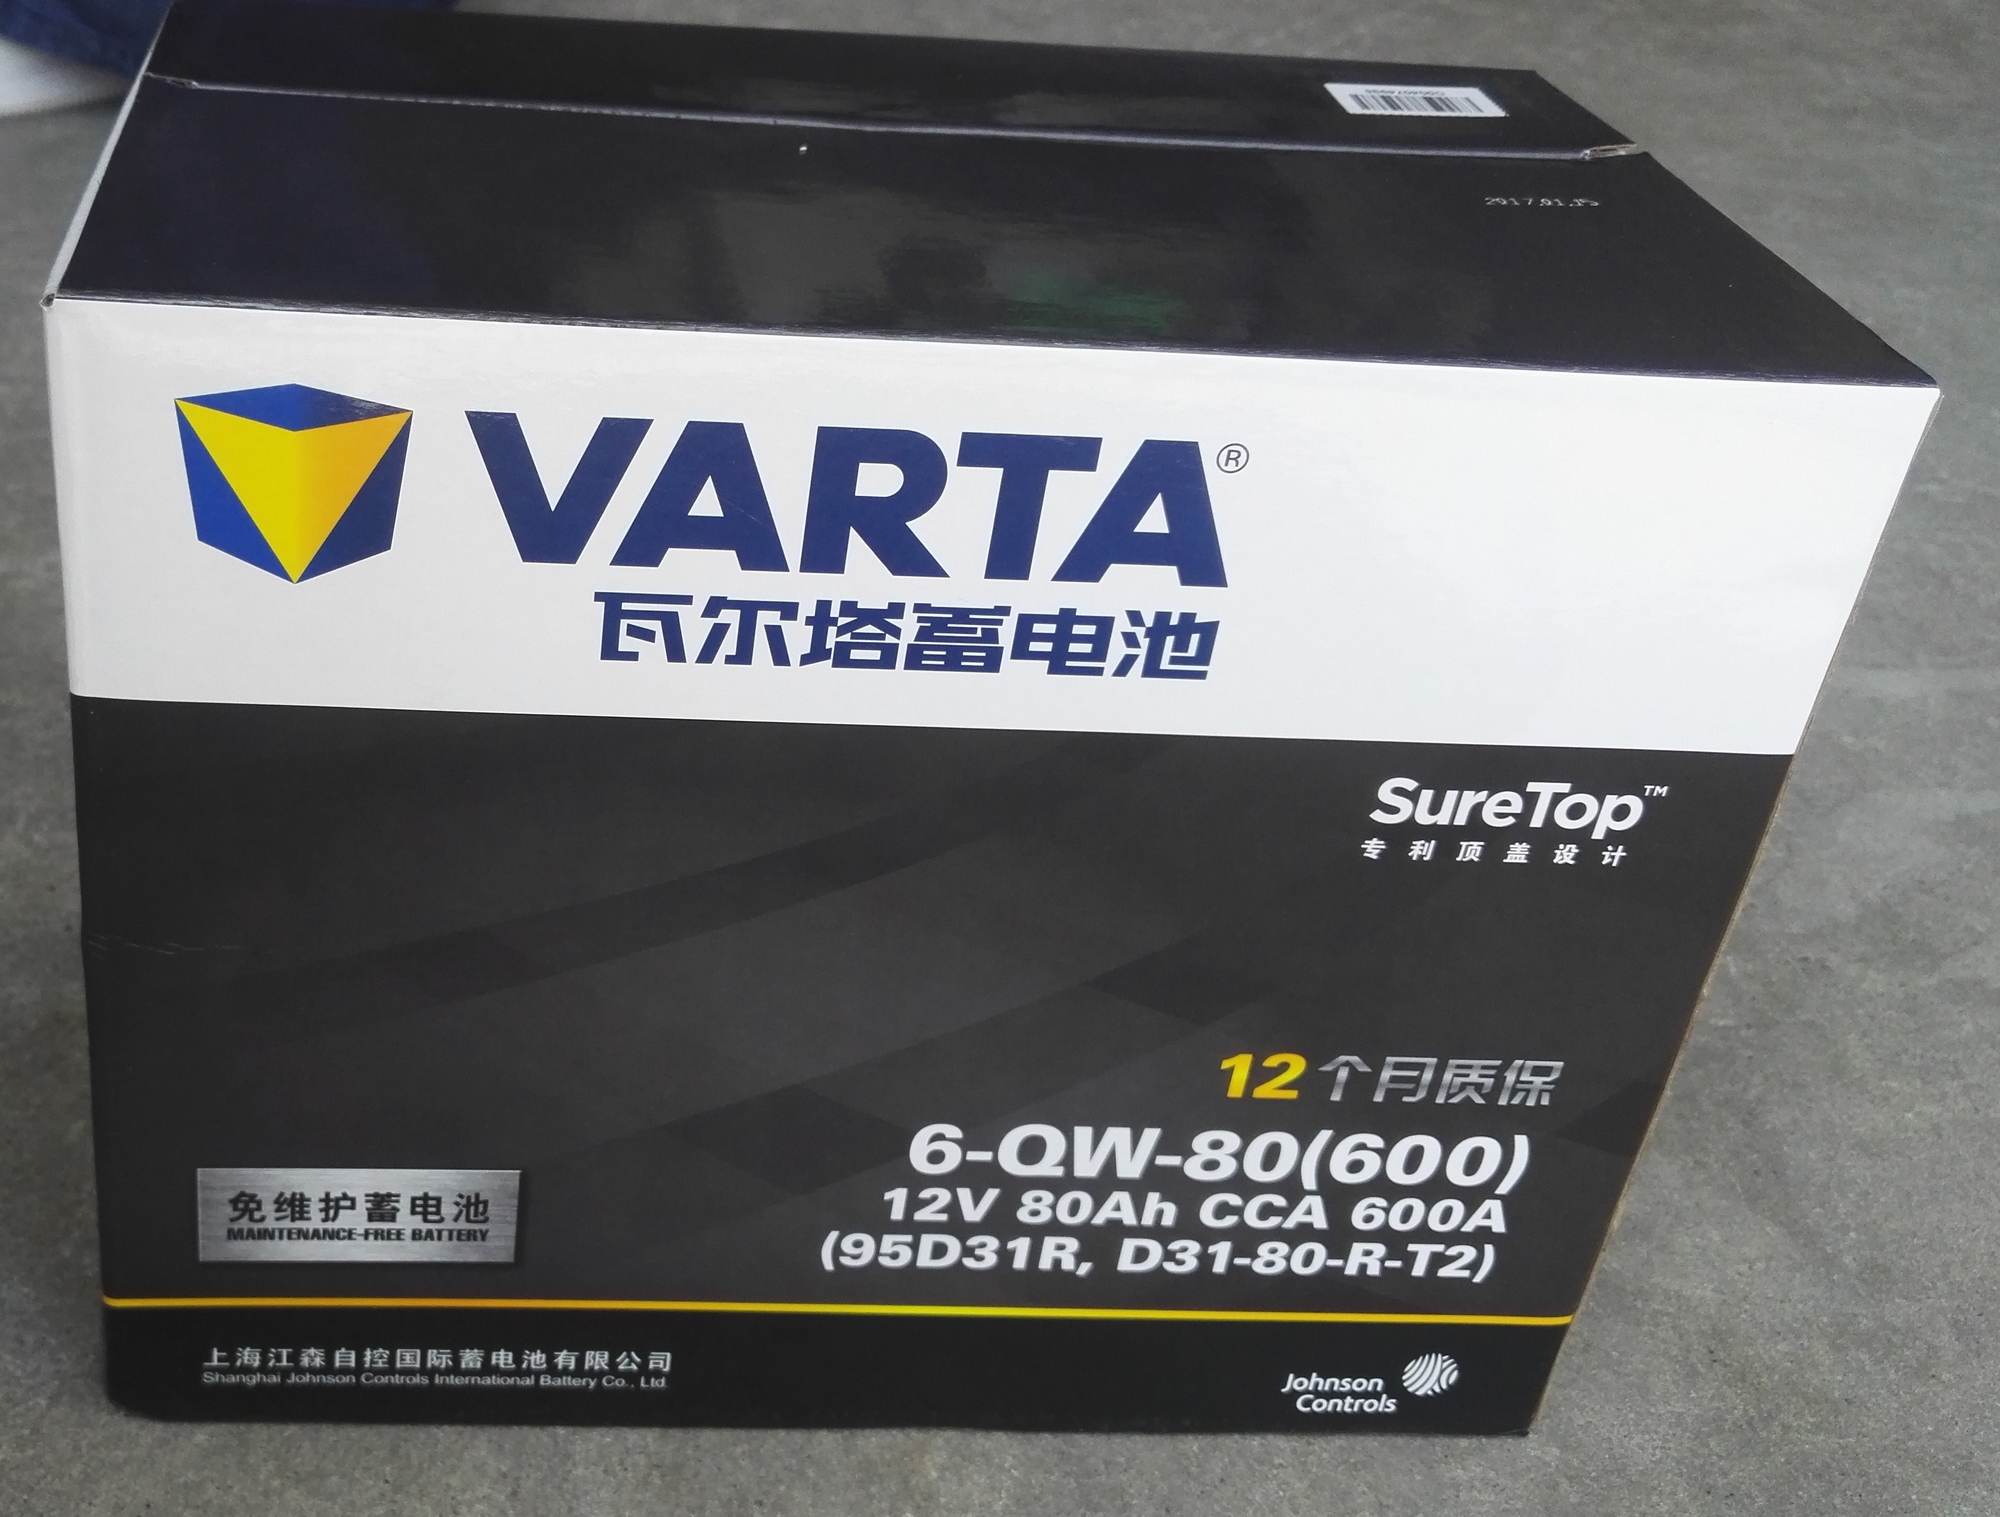 Купить Варта 6-QW-80 аккумулятор 12V80Ah необслуживаемая Защищать .